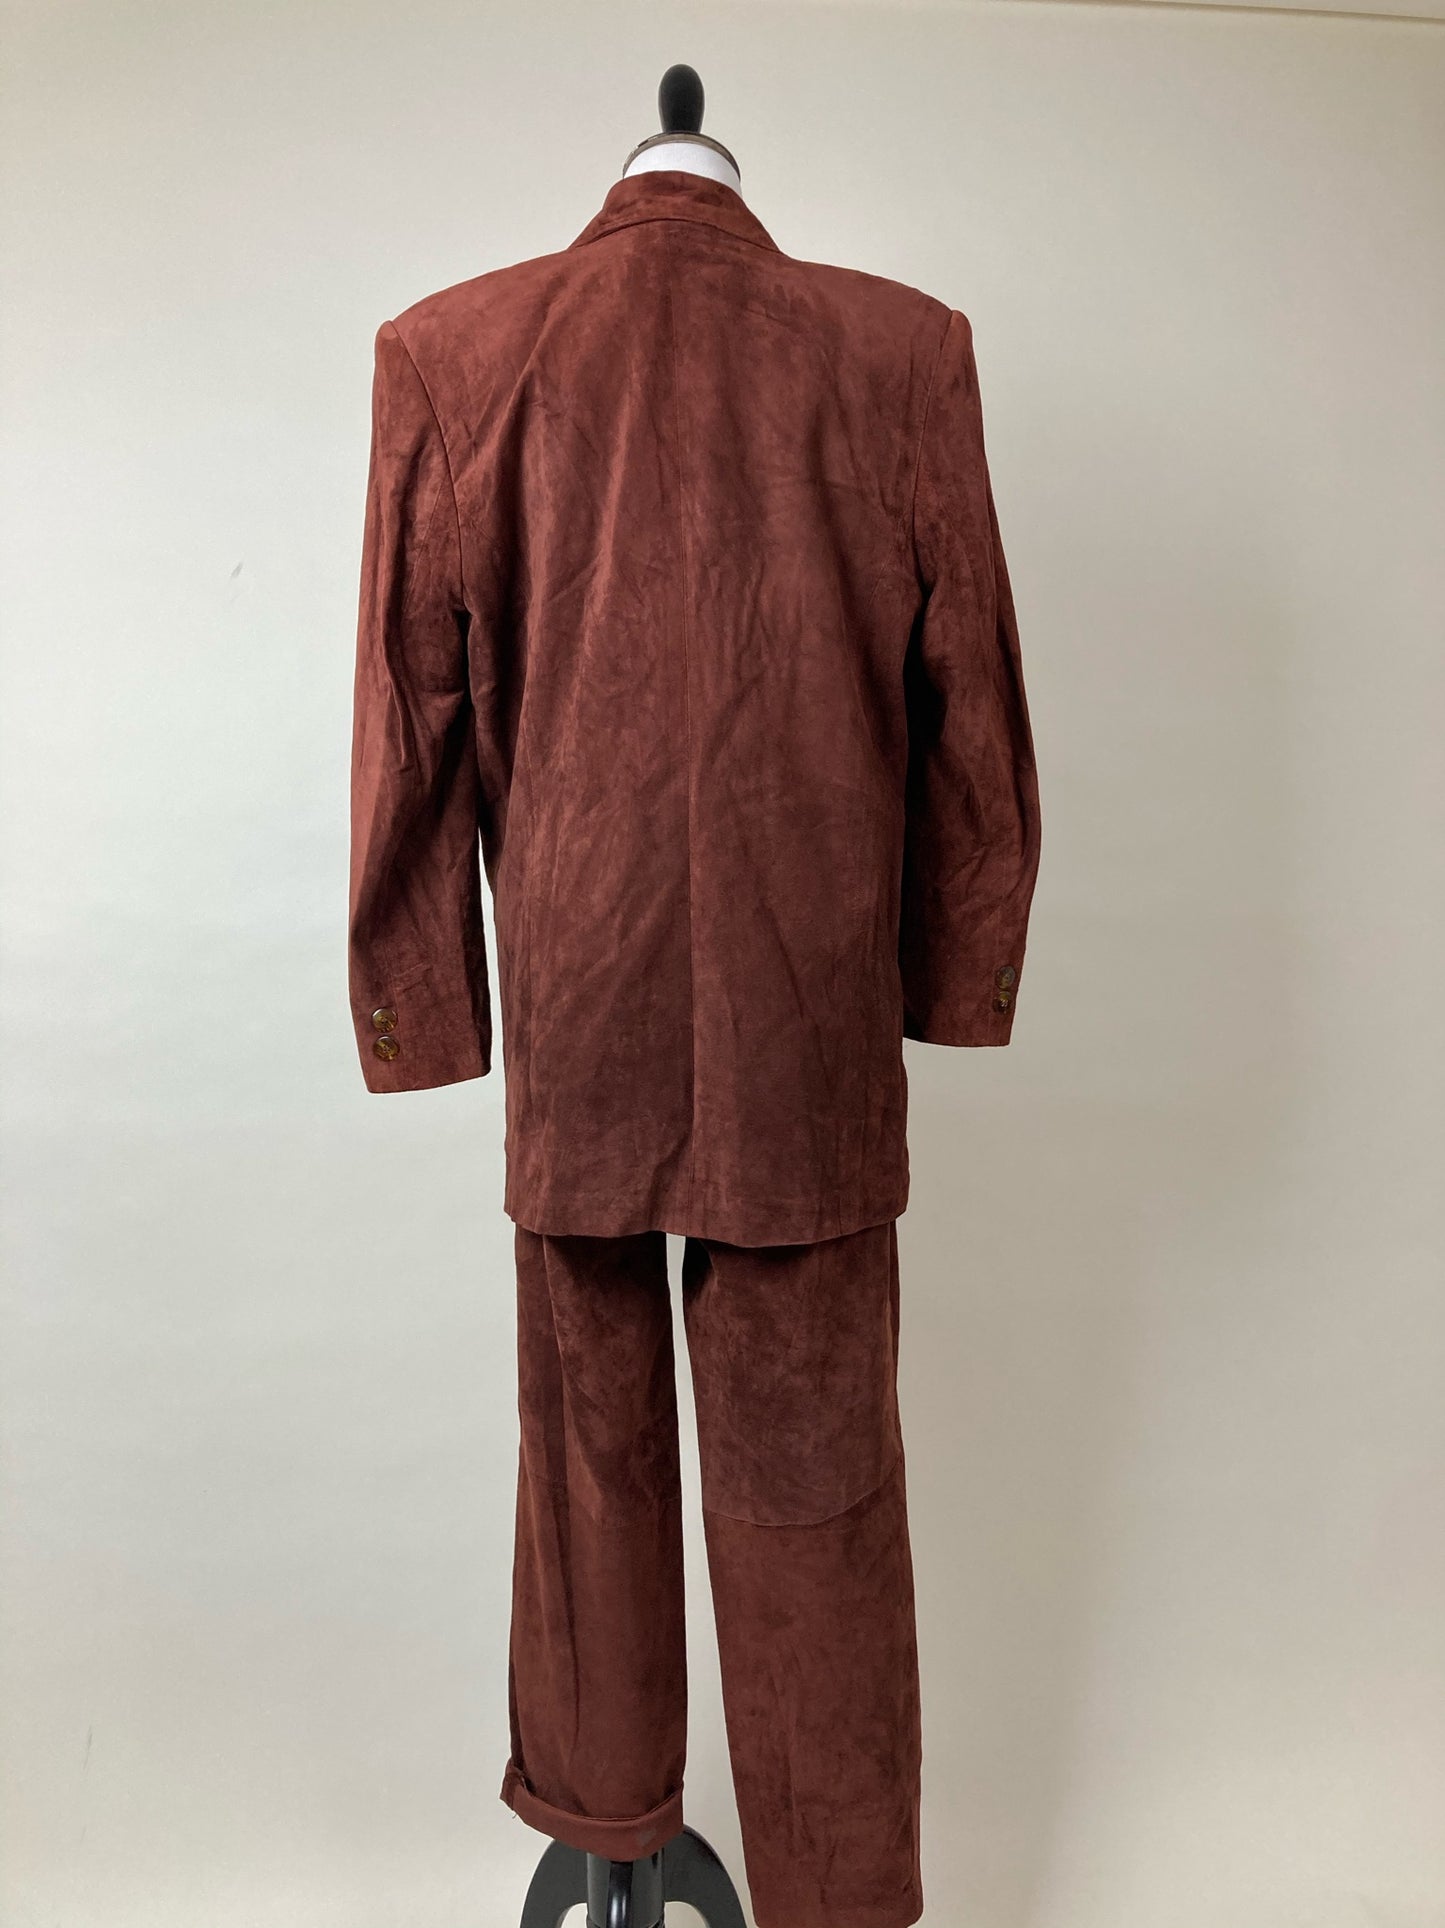 Vintage Redwood Suede Suit by Evan Davies